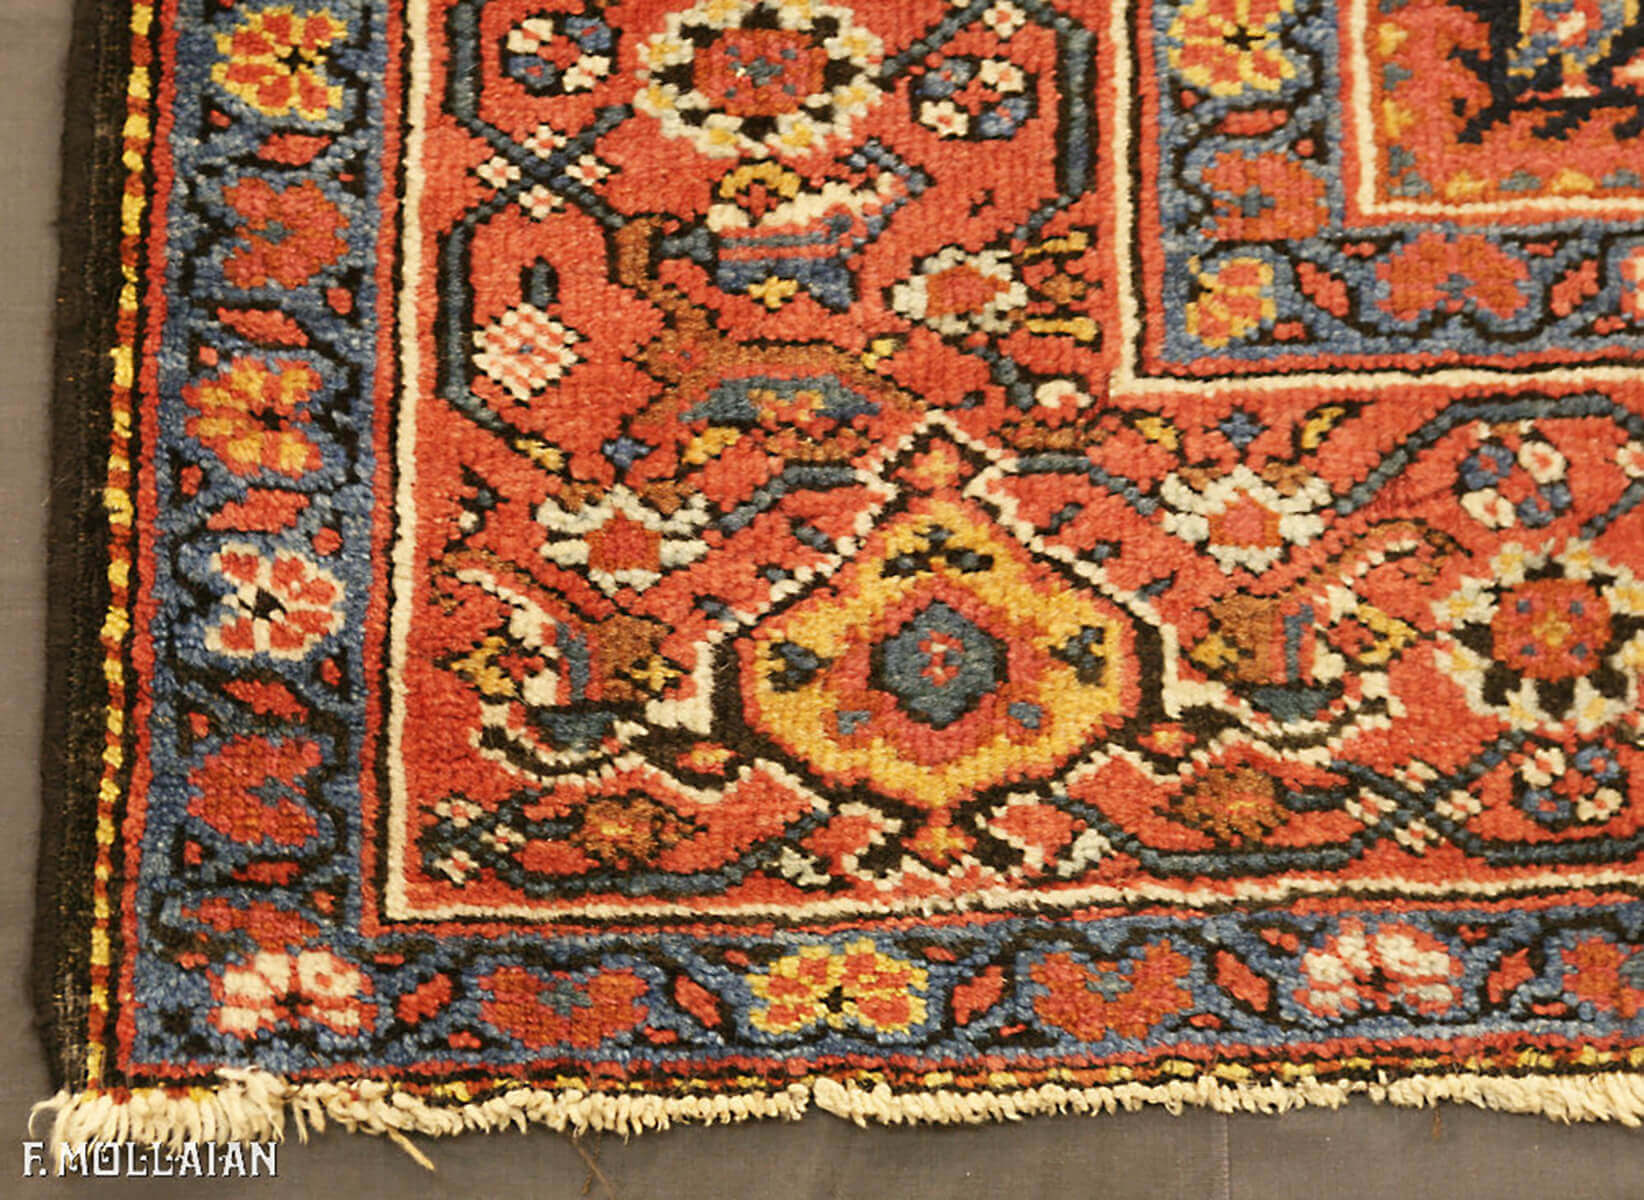 Persian Mahal Gallery Carpet n°:74333470